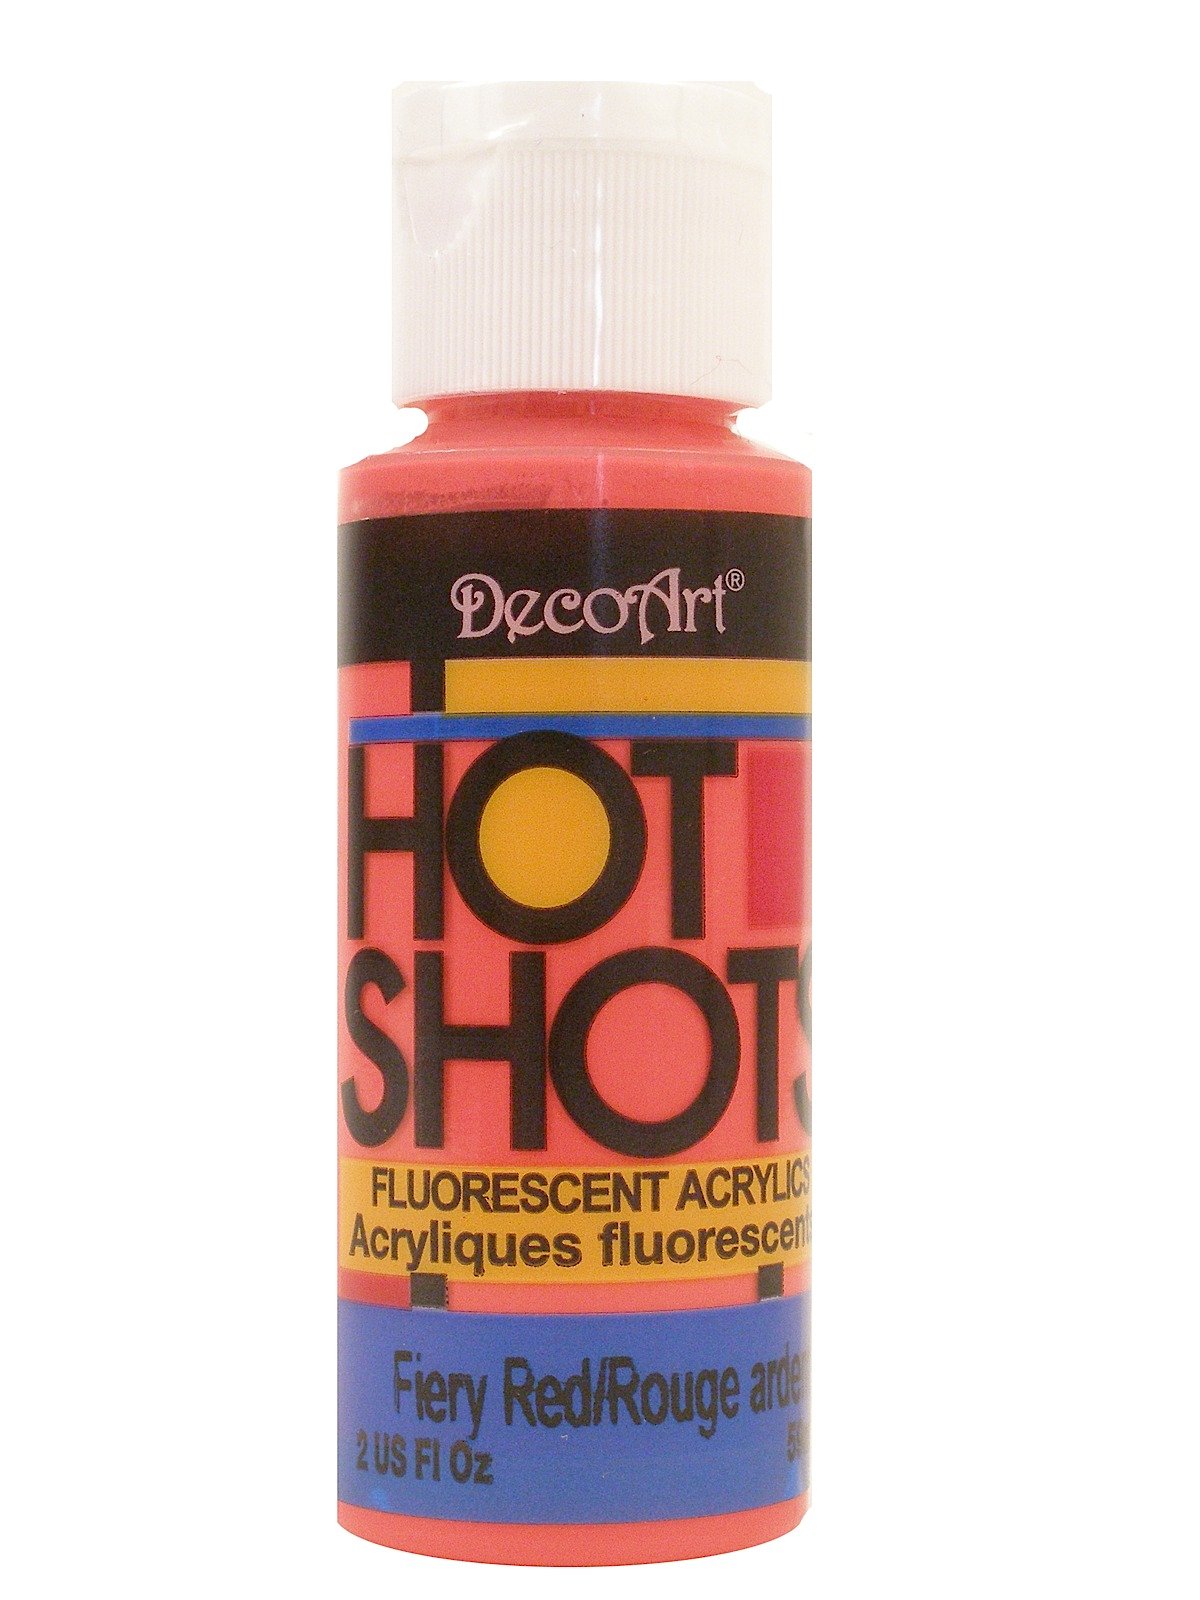 DecoArt - Hot Shots Fluorescent Acrylics